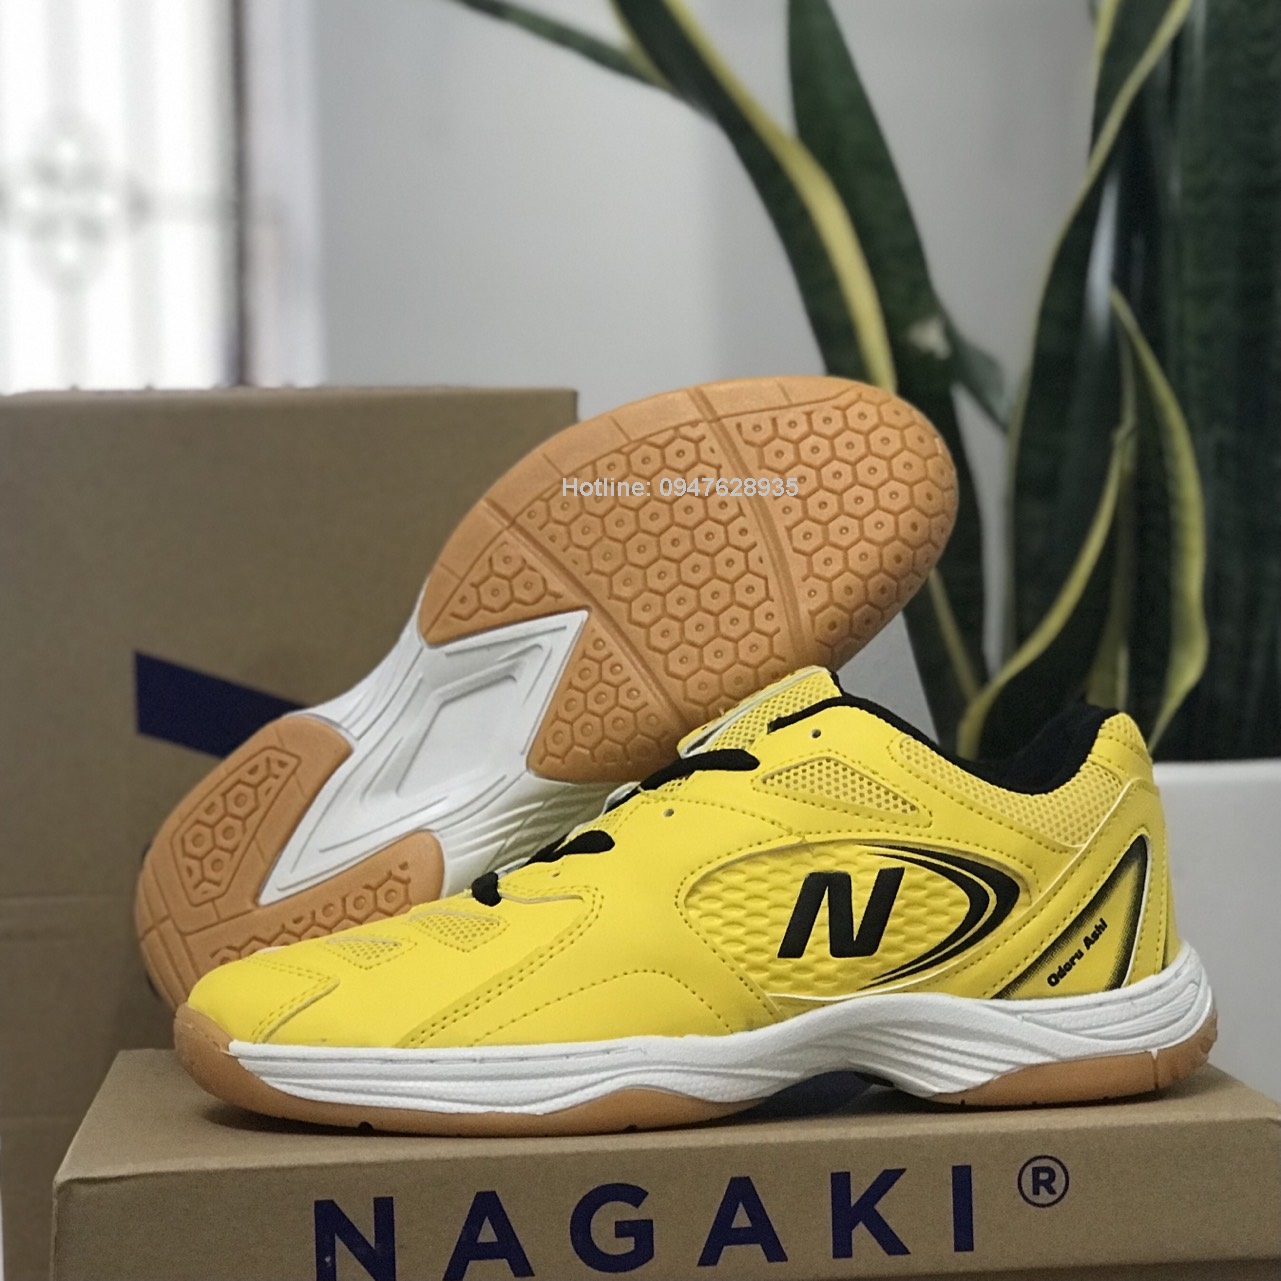 Giày cầu lông, giày bóng chuyền chuyên dụng Nagaki Ashi mẫu mới - Hàng công ty